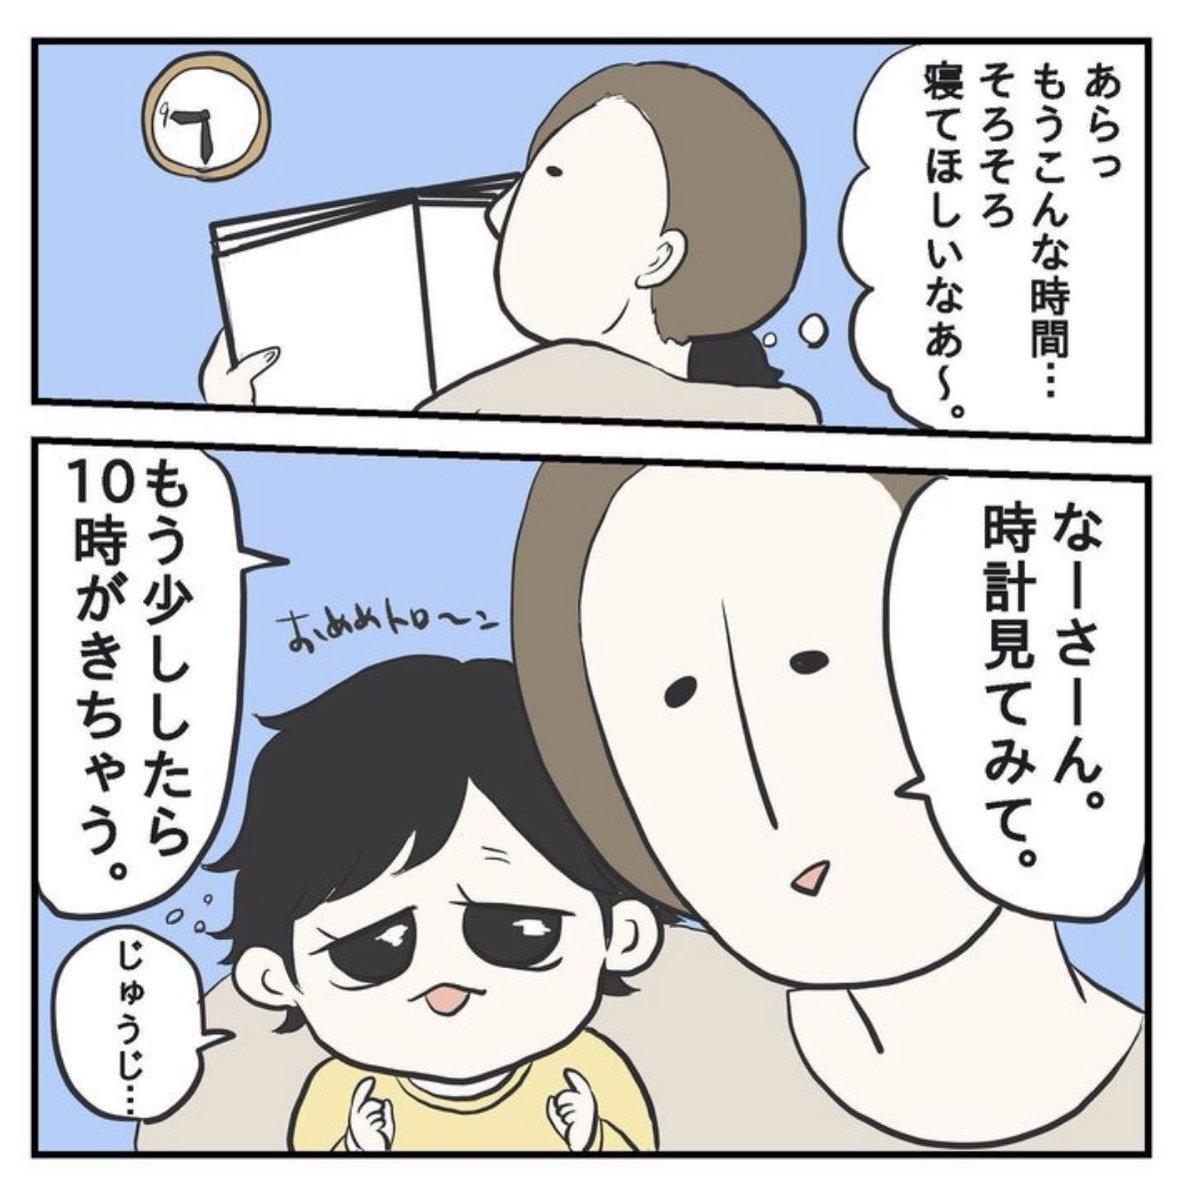 ぎゅう〜?(1/2)

#育児漫画 